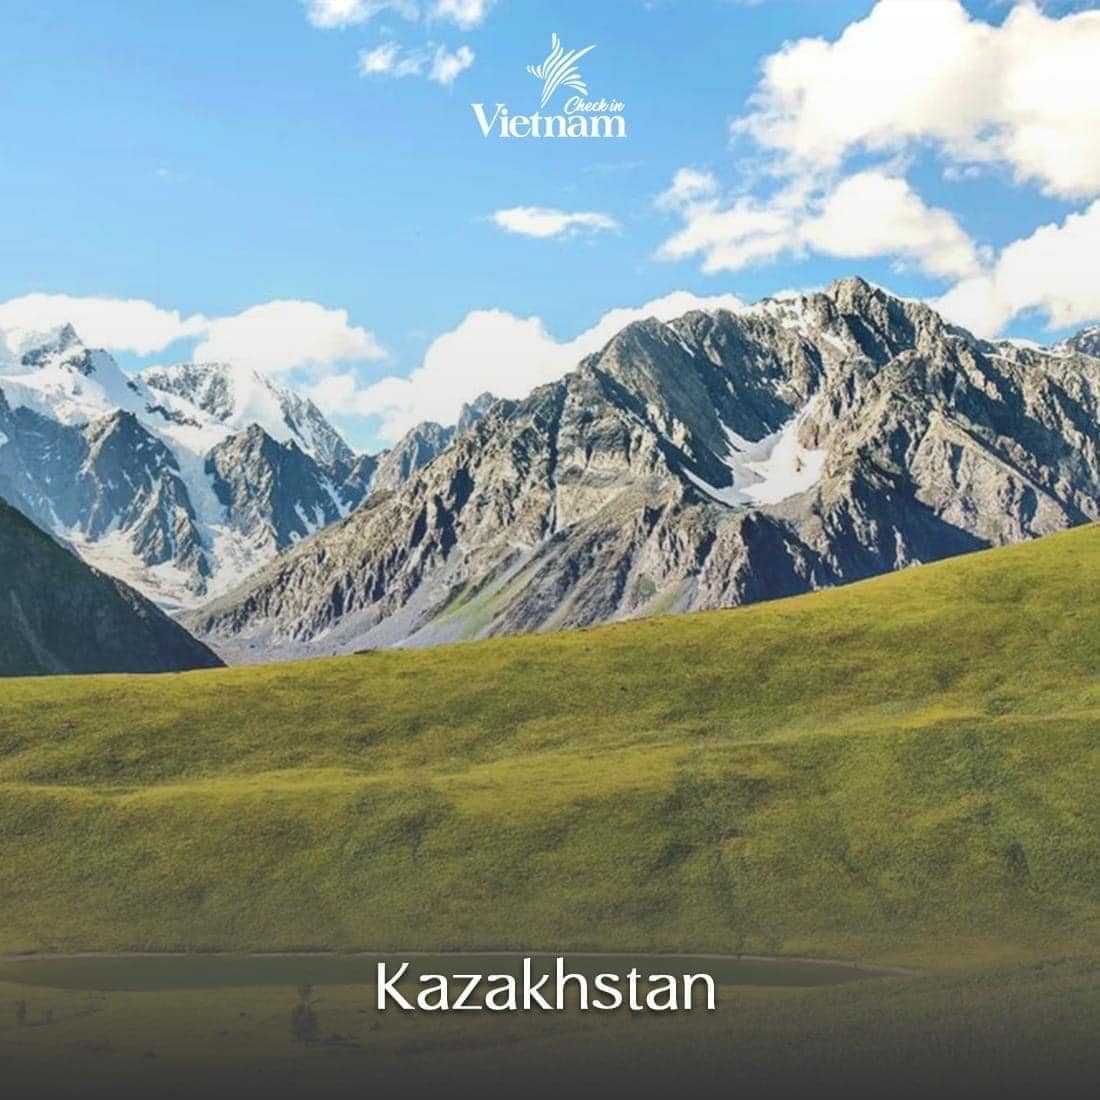 2. Kazakhstan